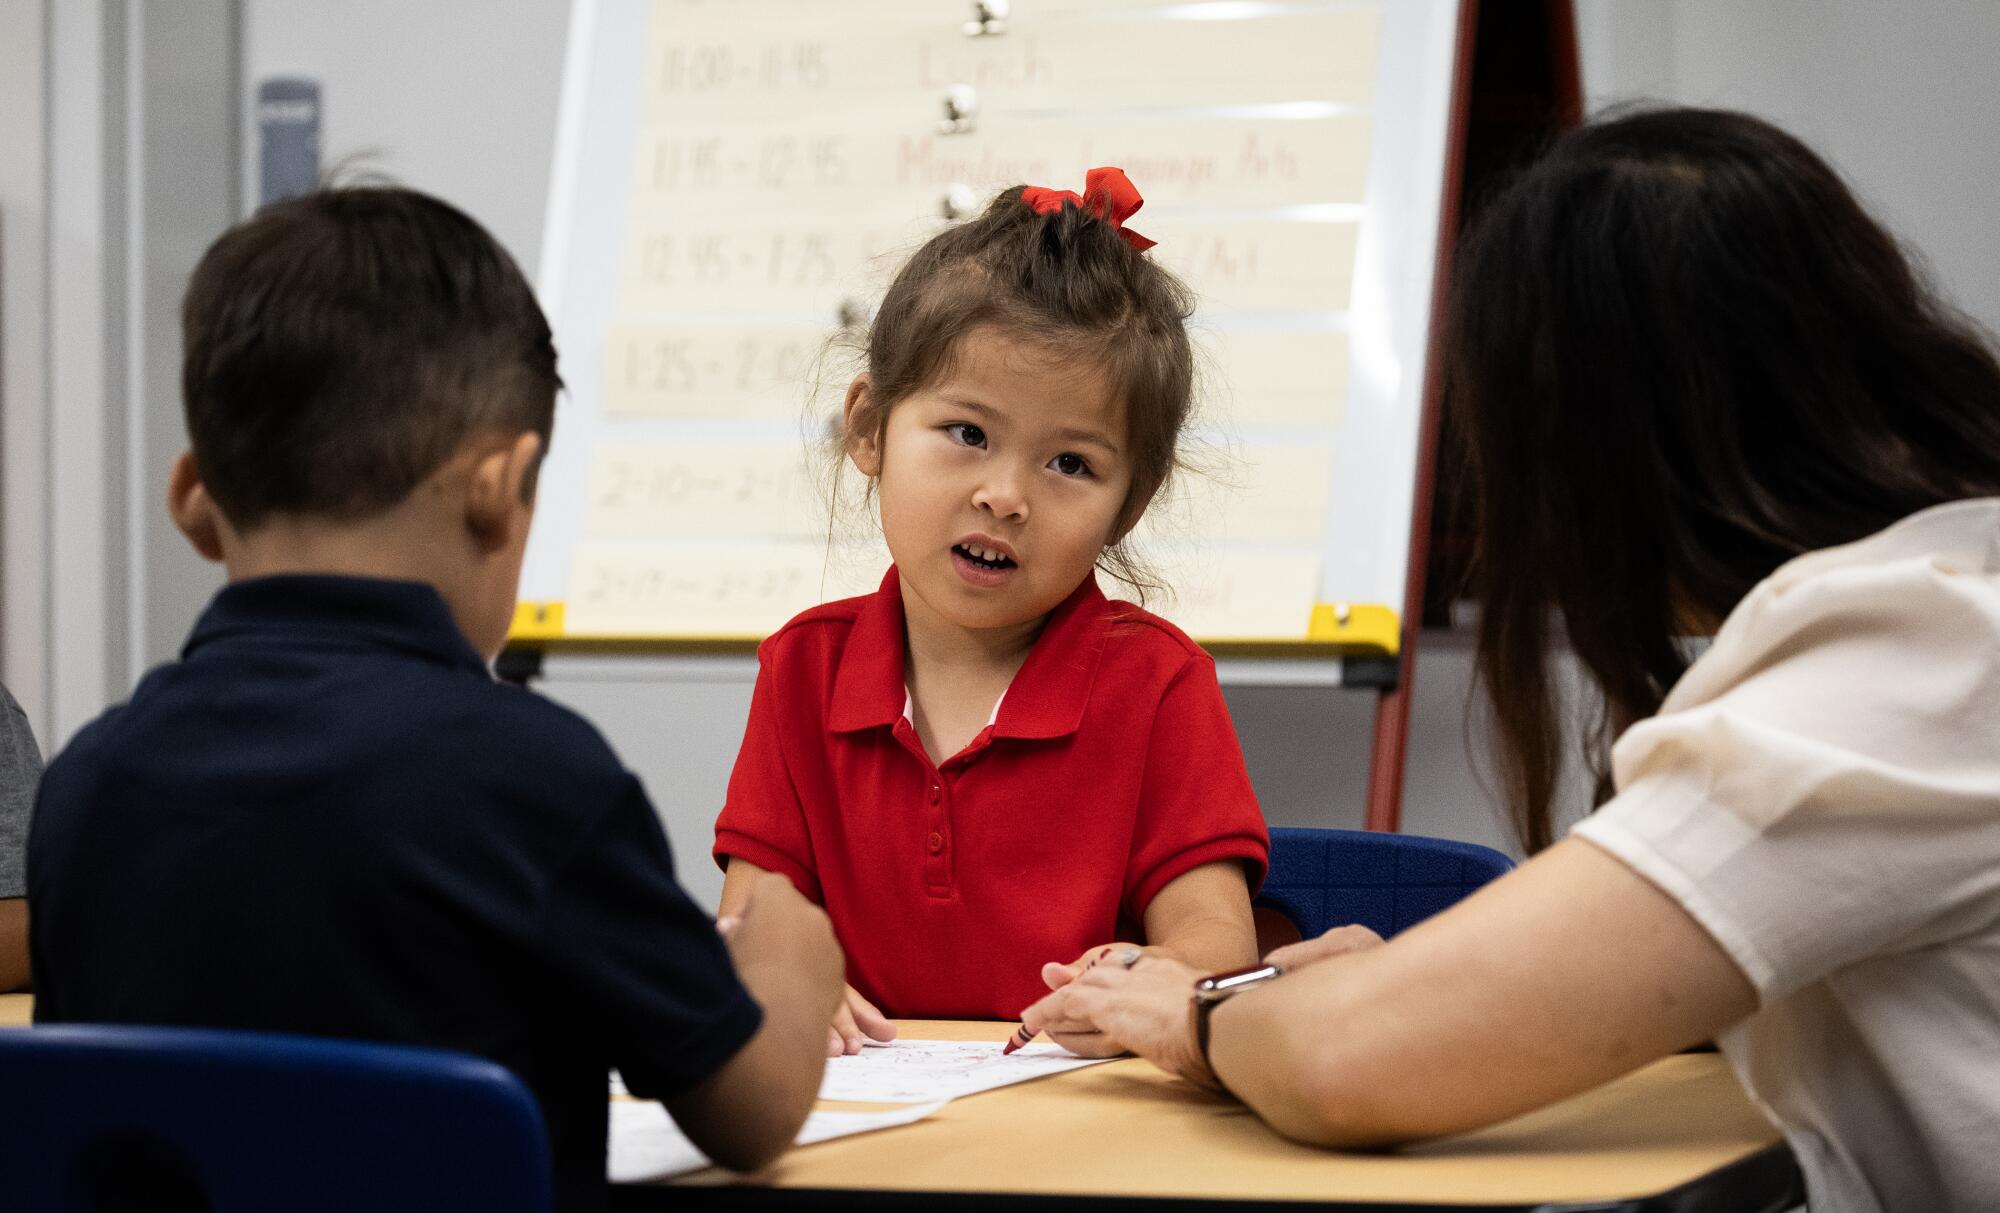 A teacher leans toward a speaking child.